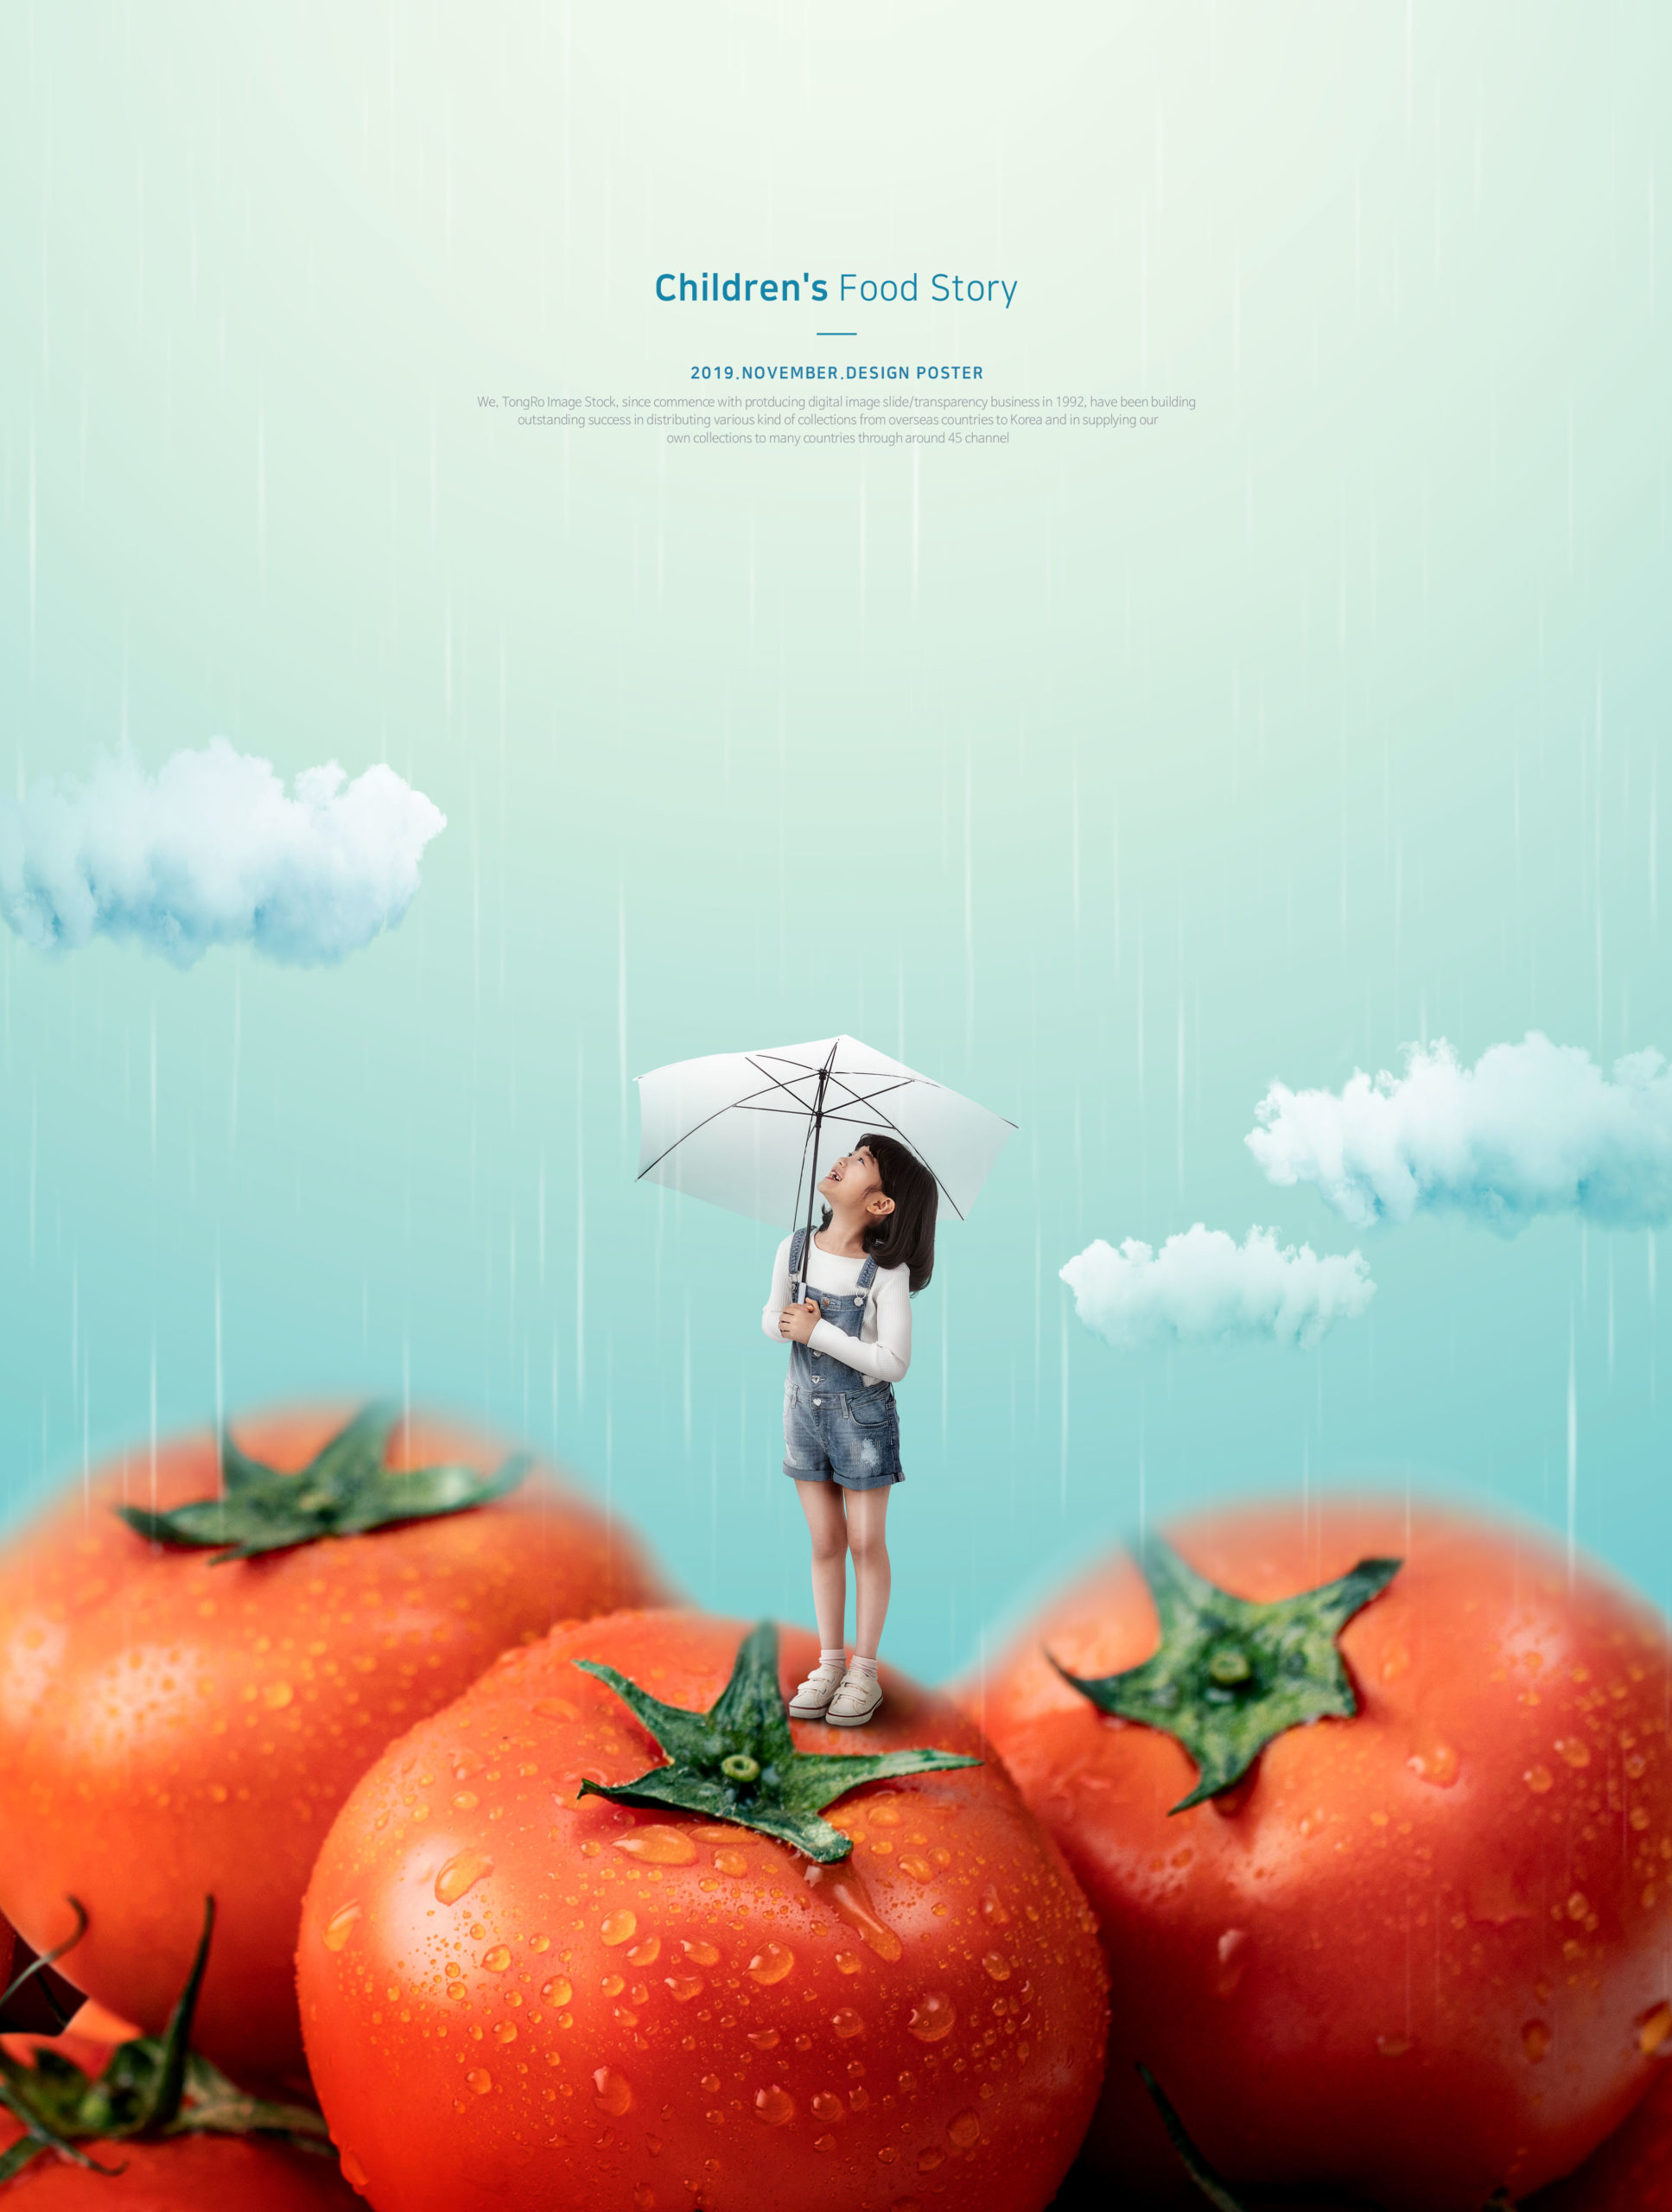 儿童主题西红柿食品海报PSD素材第一素材精选模板插图